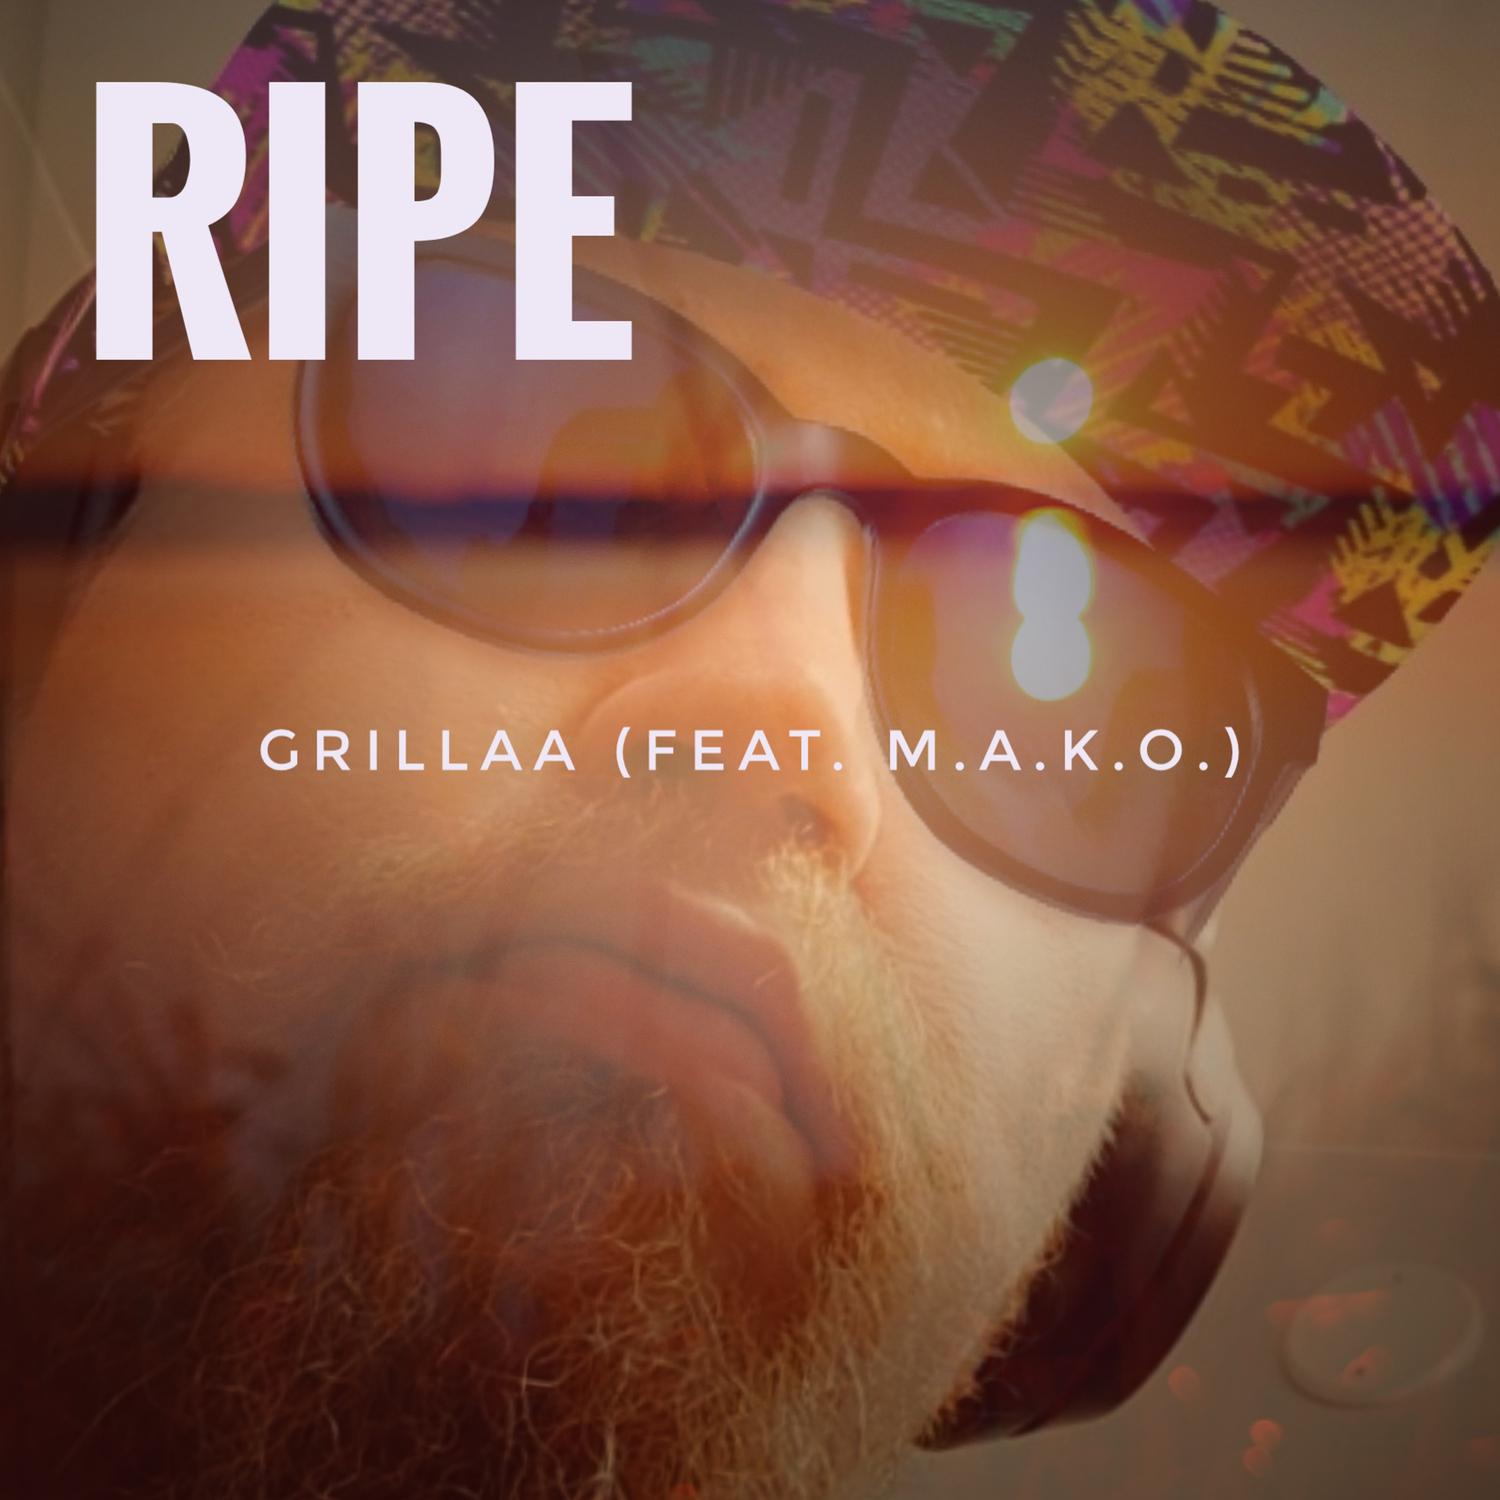 Ripe - Grillaa